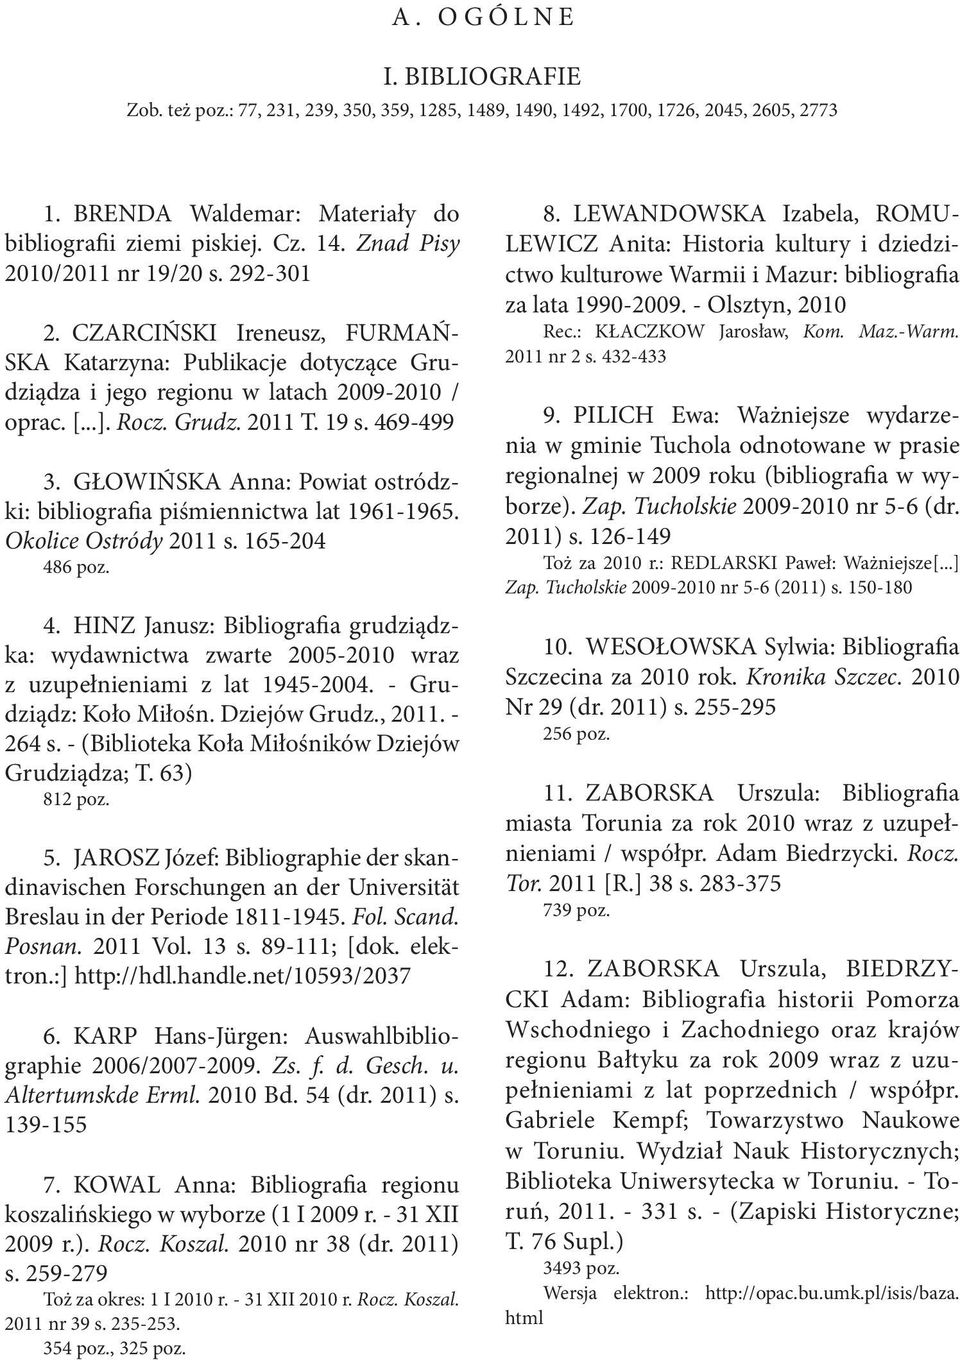 GŁOWIŃSKA Anna: Powiat ostródzki: bibliografia piśmiennictwa lat 1961-1965. Okolice Ostródy 2011 s. 165-204 48